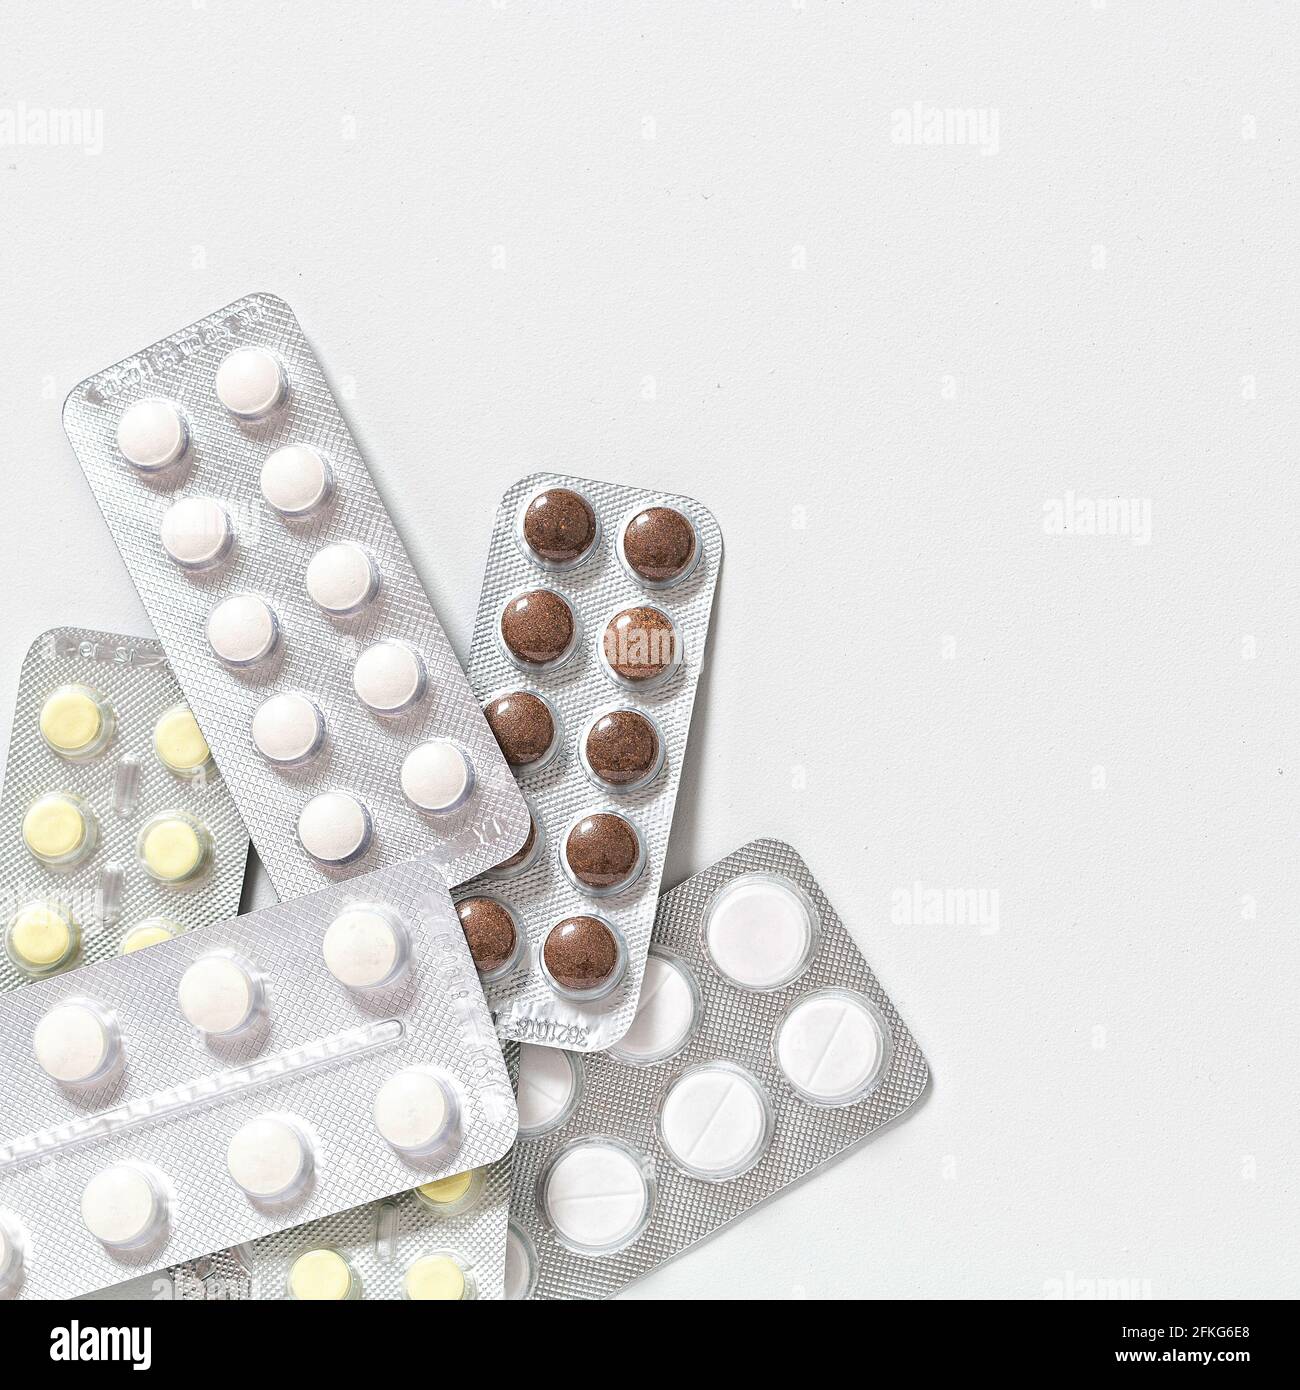 Verschiedene Medikamente: Tabletten, Blistertabletten, Medikamente auf weißem Hintergrund Stockfoto